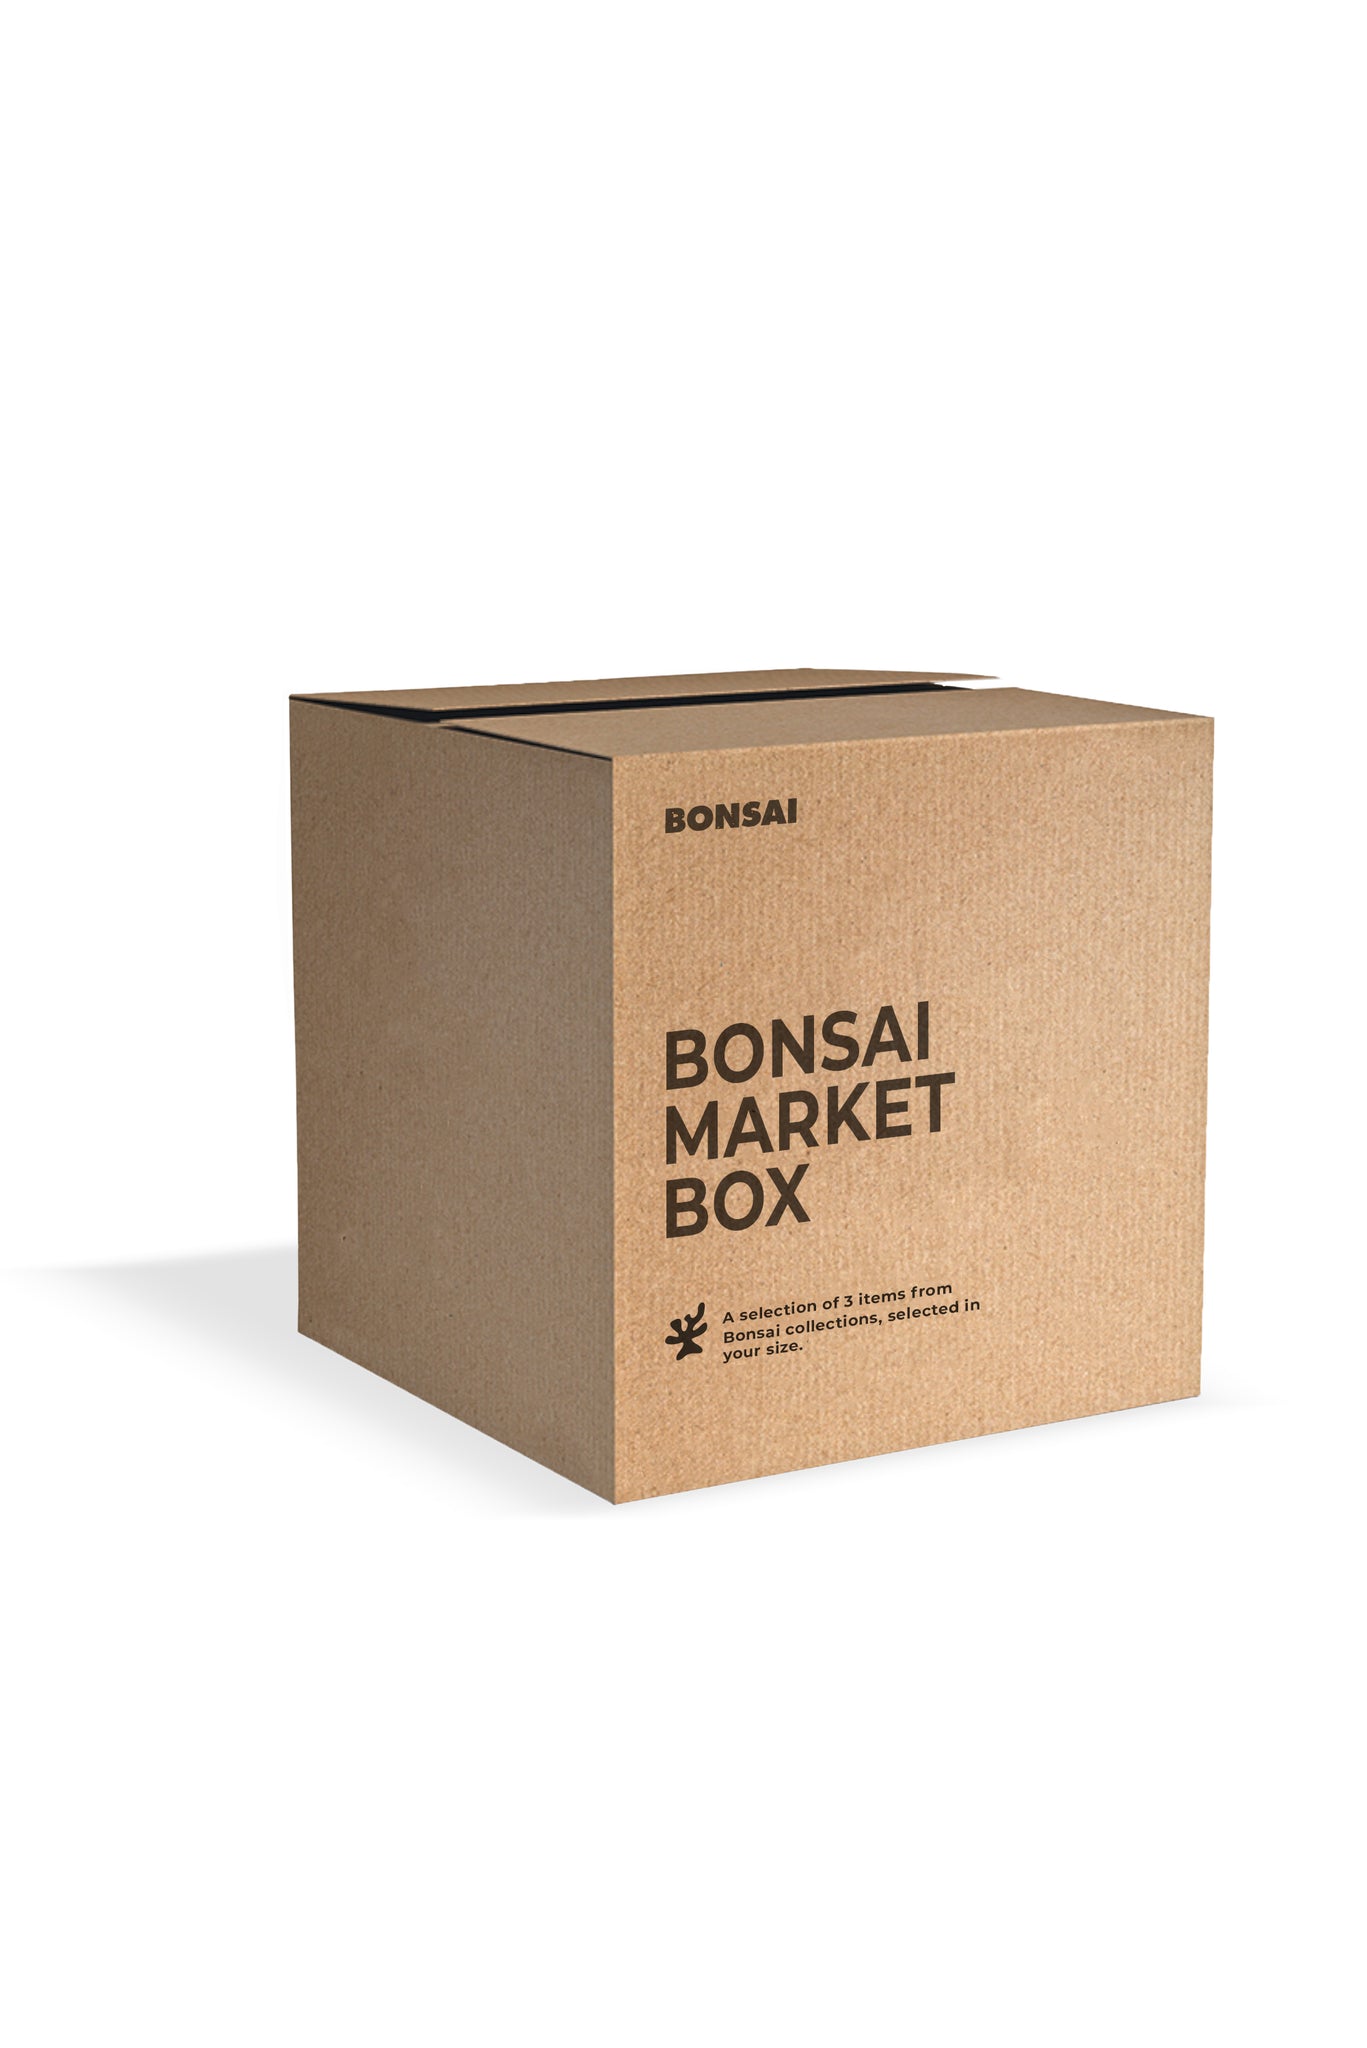 BONSAI MARKET BOX